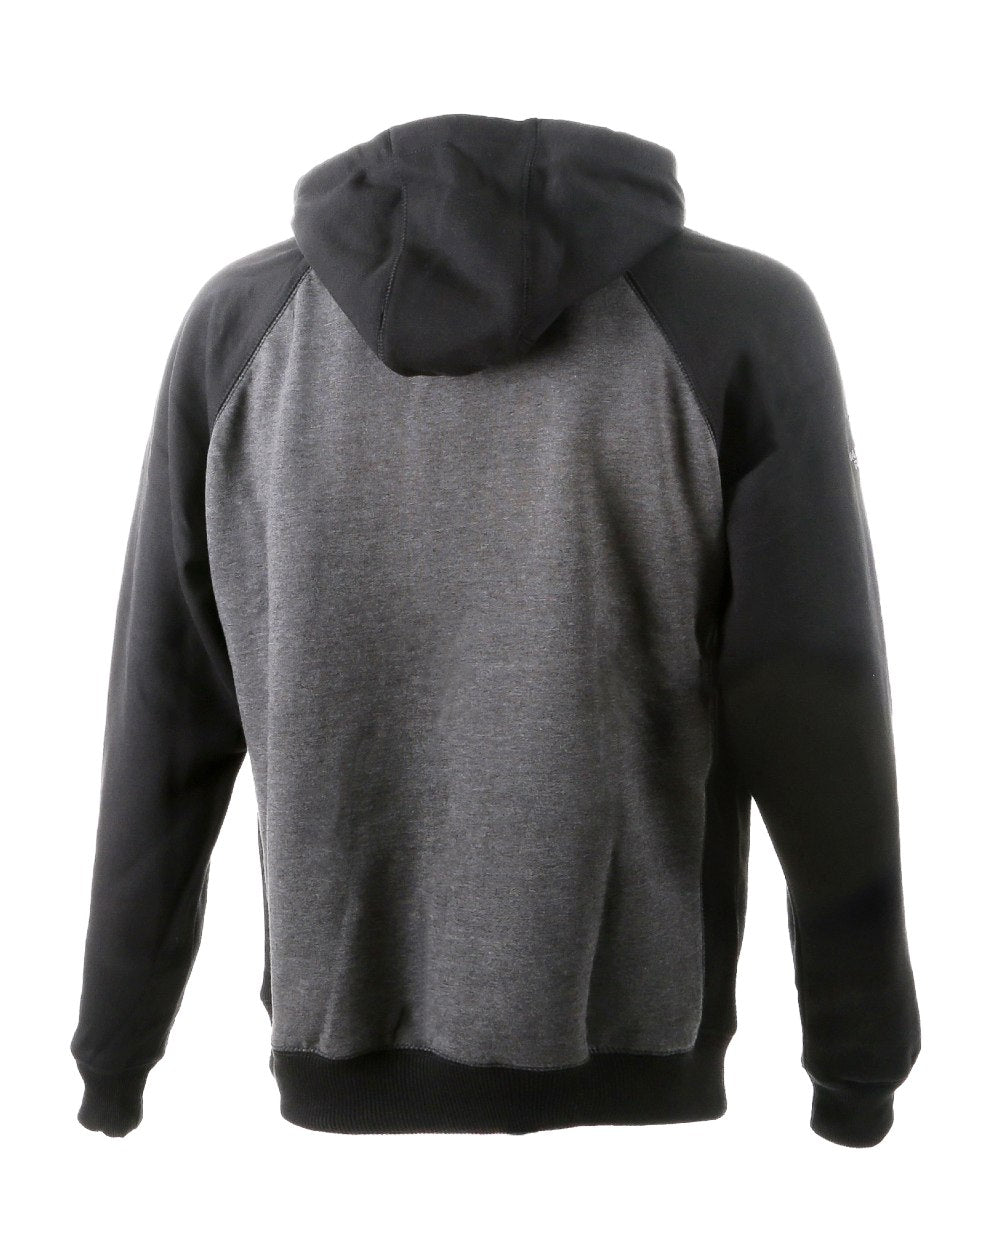 DeWalt Stratford Hooded Sweatshirt in Grey Black